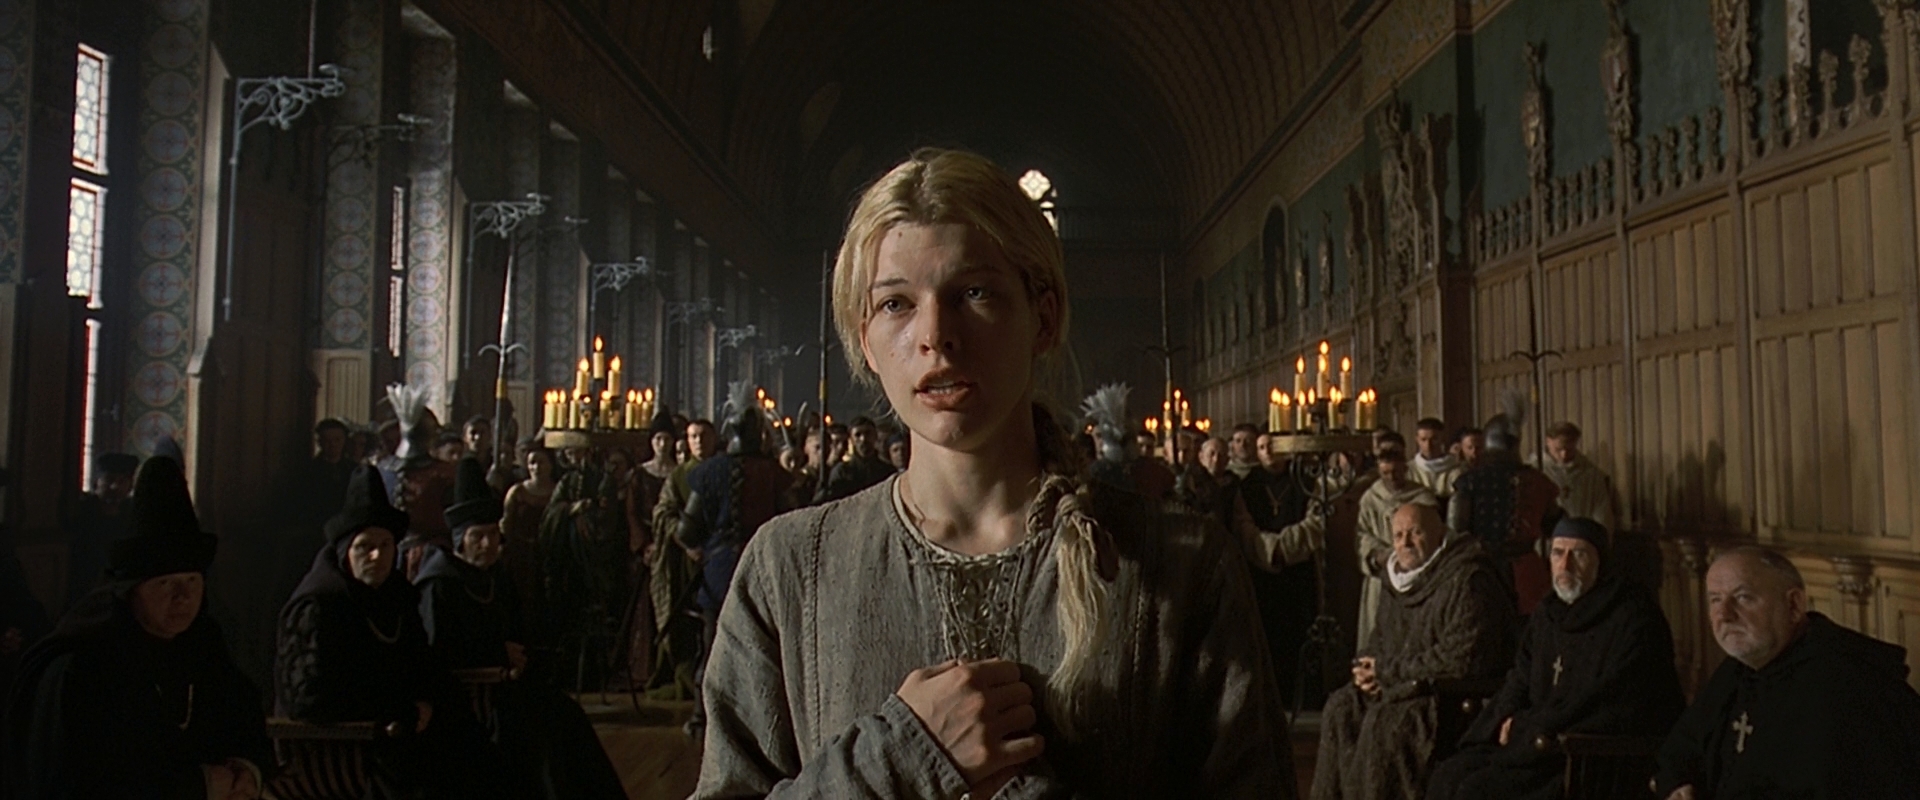 Жанна д'АРК Joan of Arc, 1999